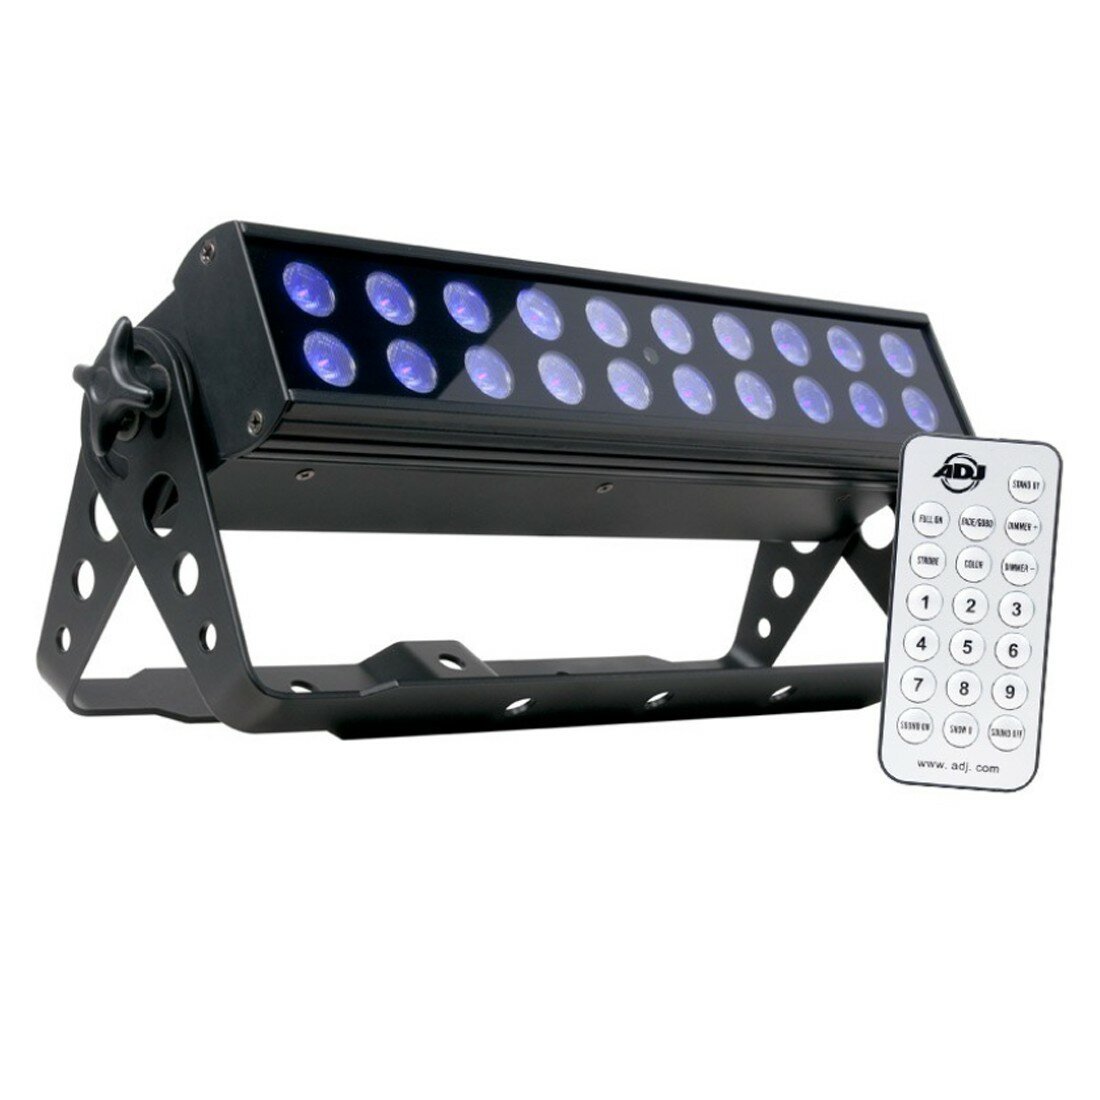 ADJ UV LED BAR20 IR мощная ультрафиолетовая световая панель с 20-ю яркими светодиодами мощностью 1 Вт